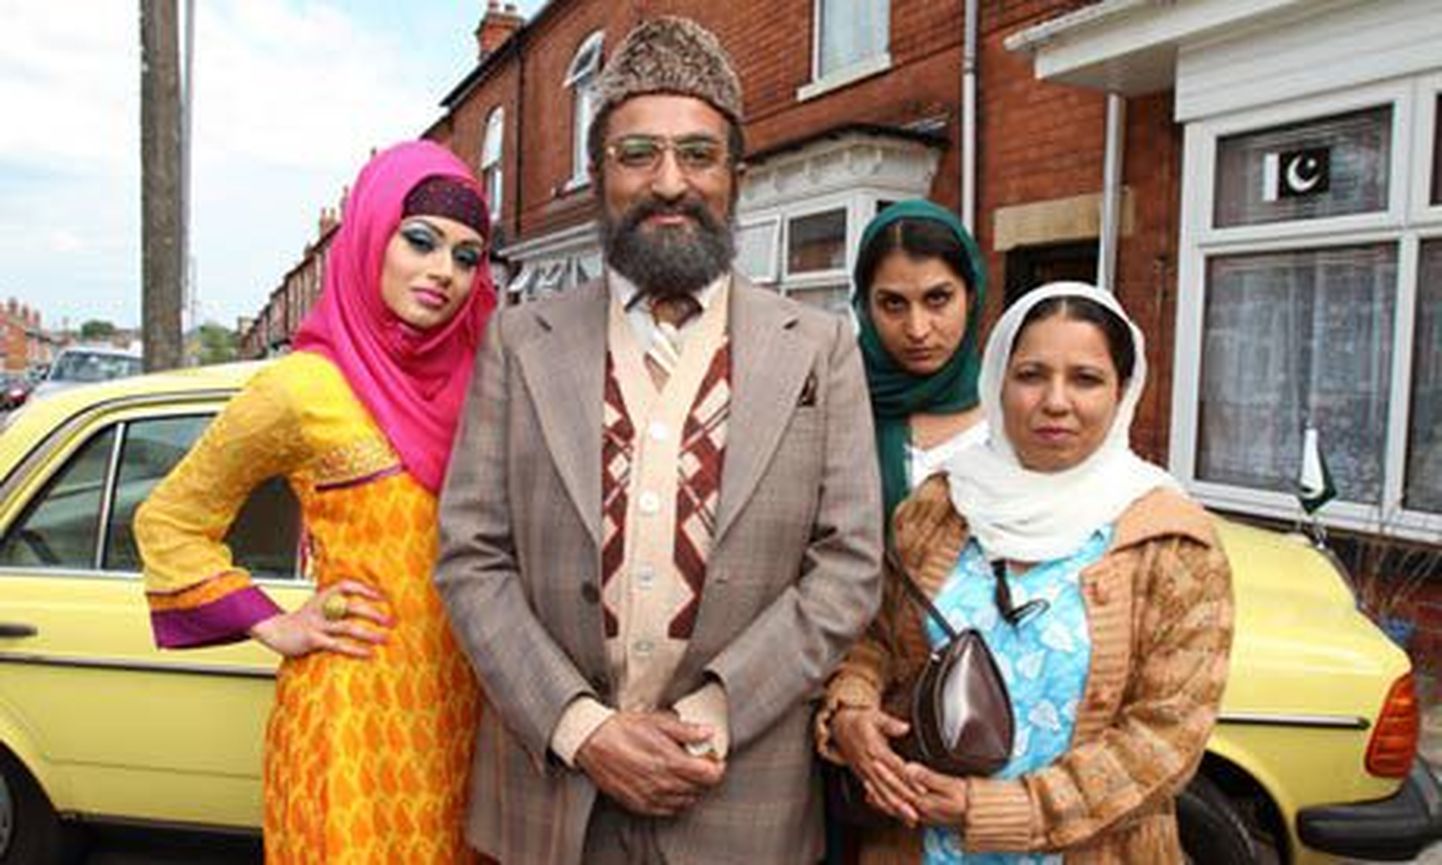 Uue seriaali keskmes olev Briti moslemipere.